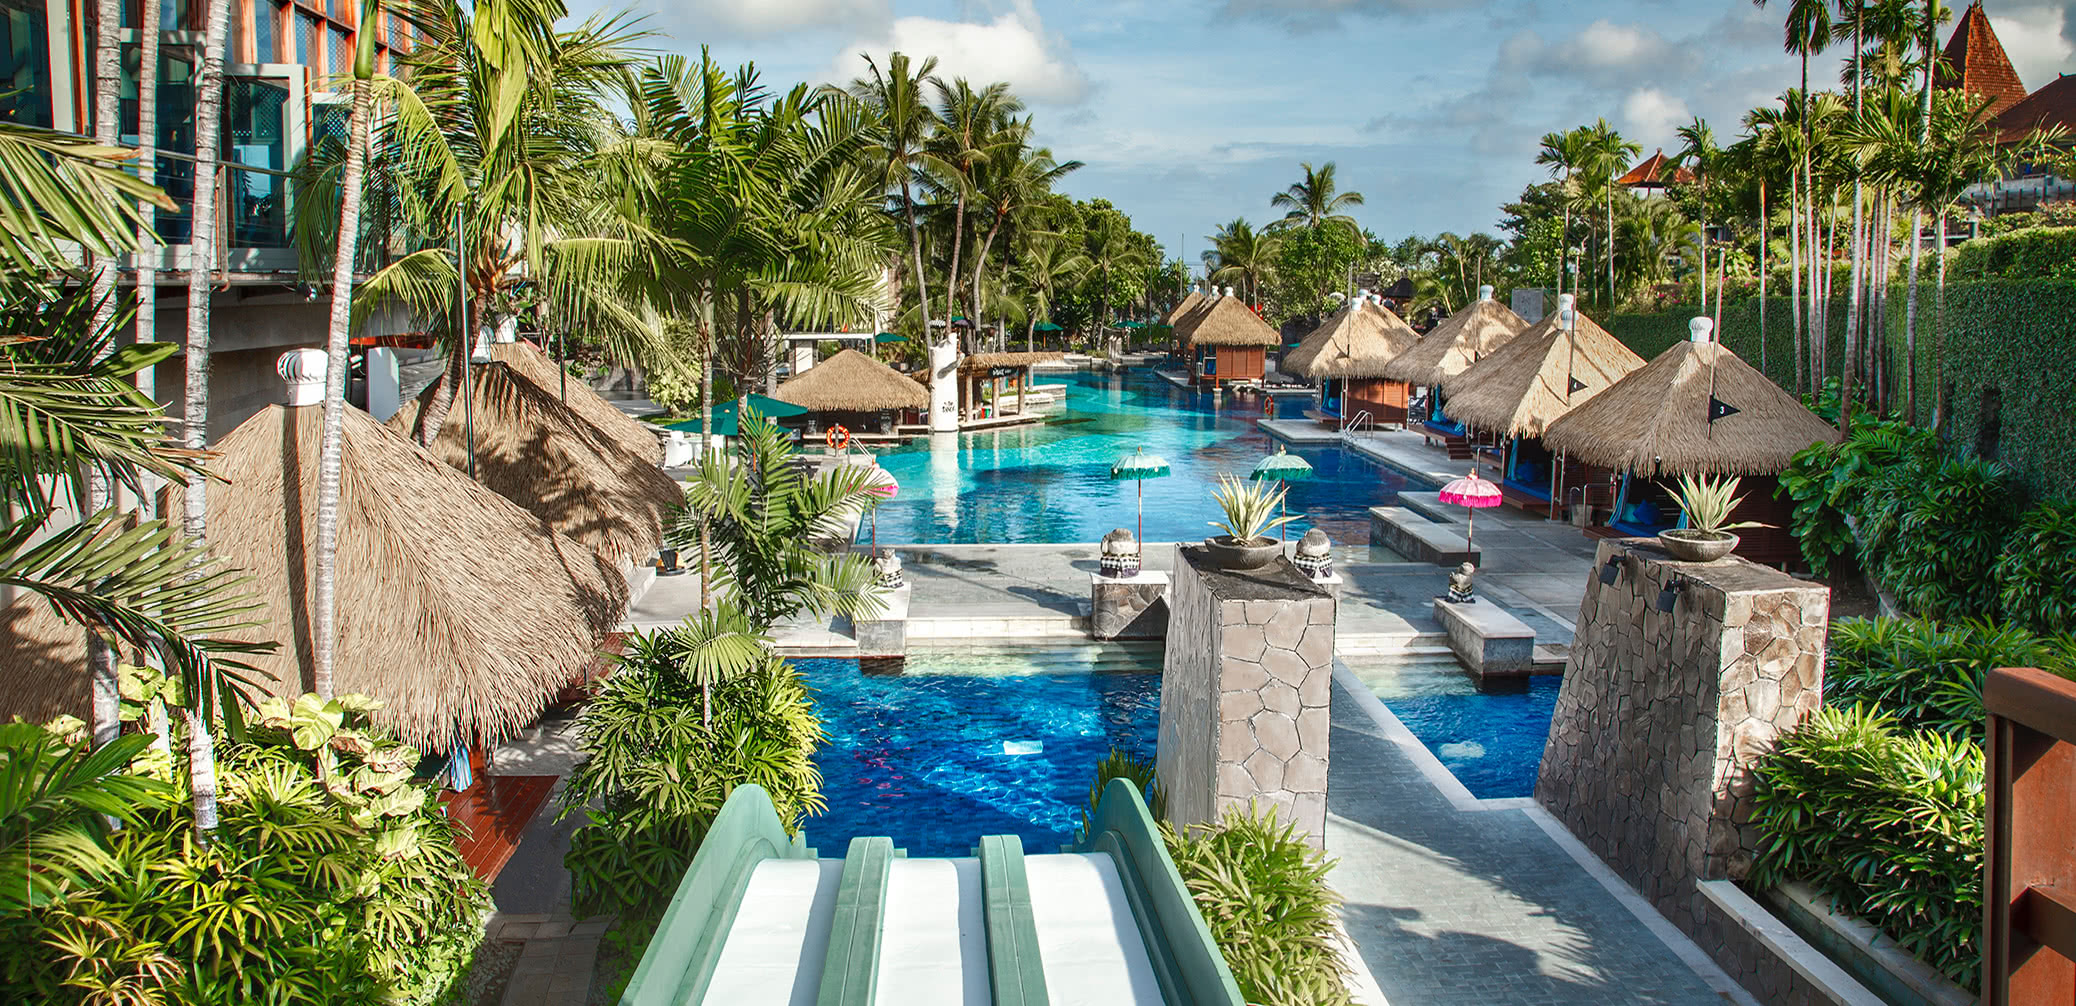 Top 6 Best Family Friendly Hotels in Bali